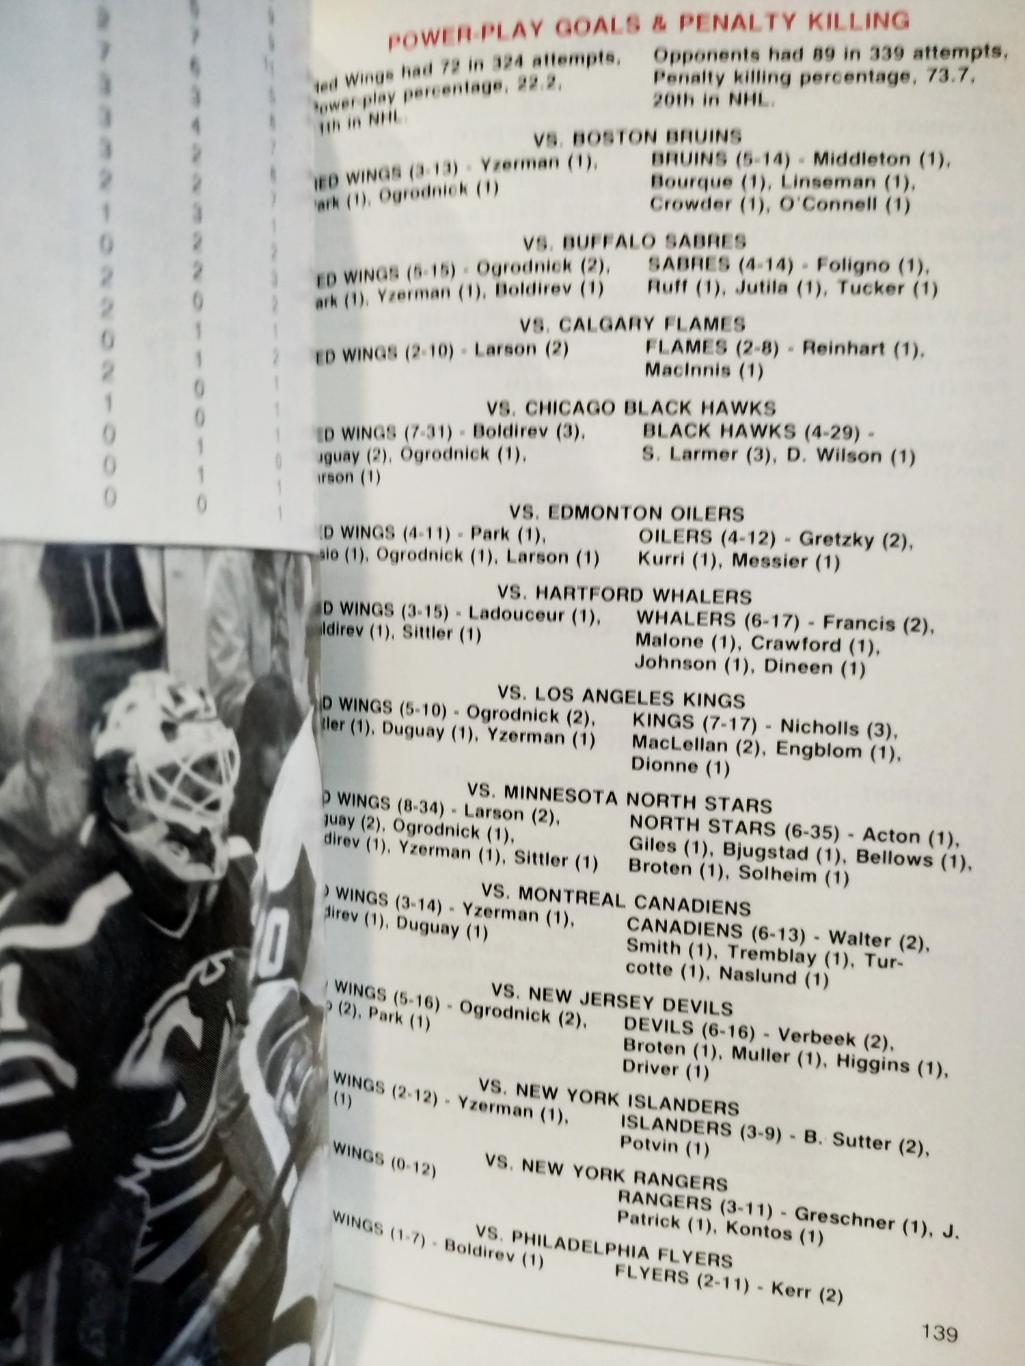 ХОККЕЙ СПРАВОЧНИК ЕЖЕГОДНИК НХЛ ДЕТРОЙТ 1985-86 DETROIT RED WINGS MEDIA GUIDE 4